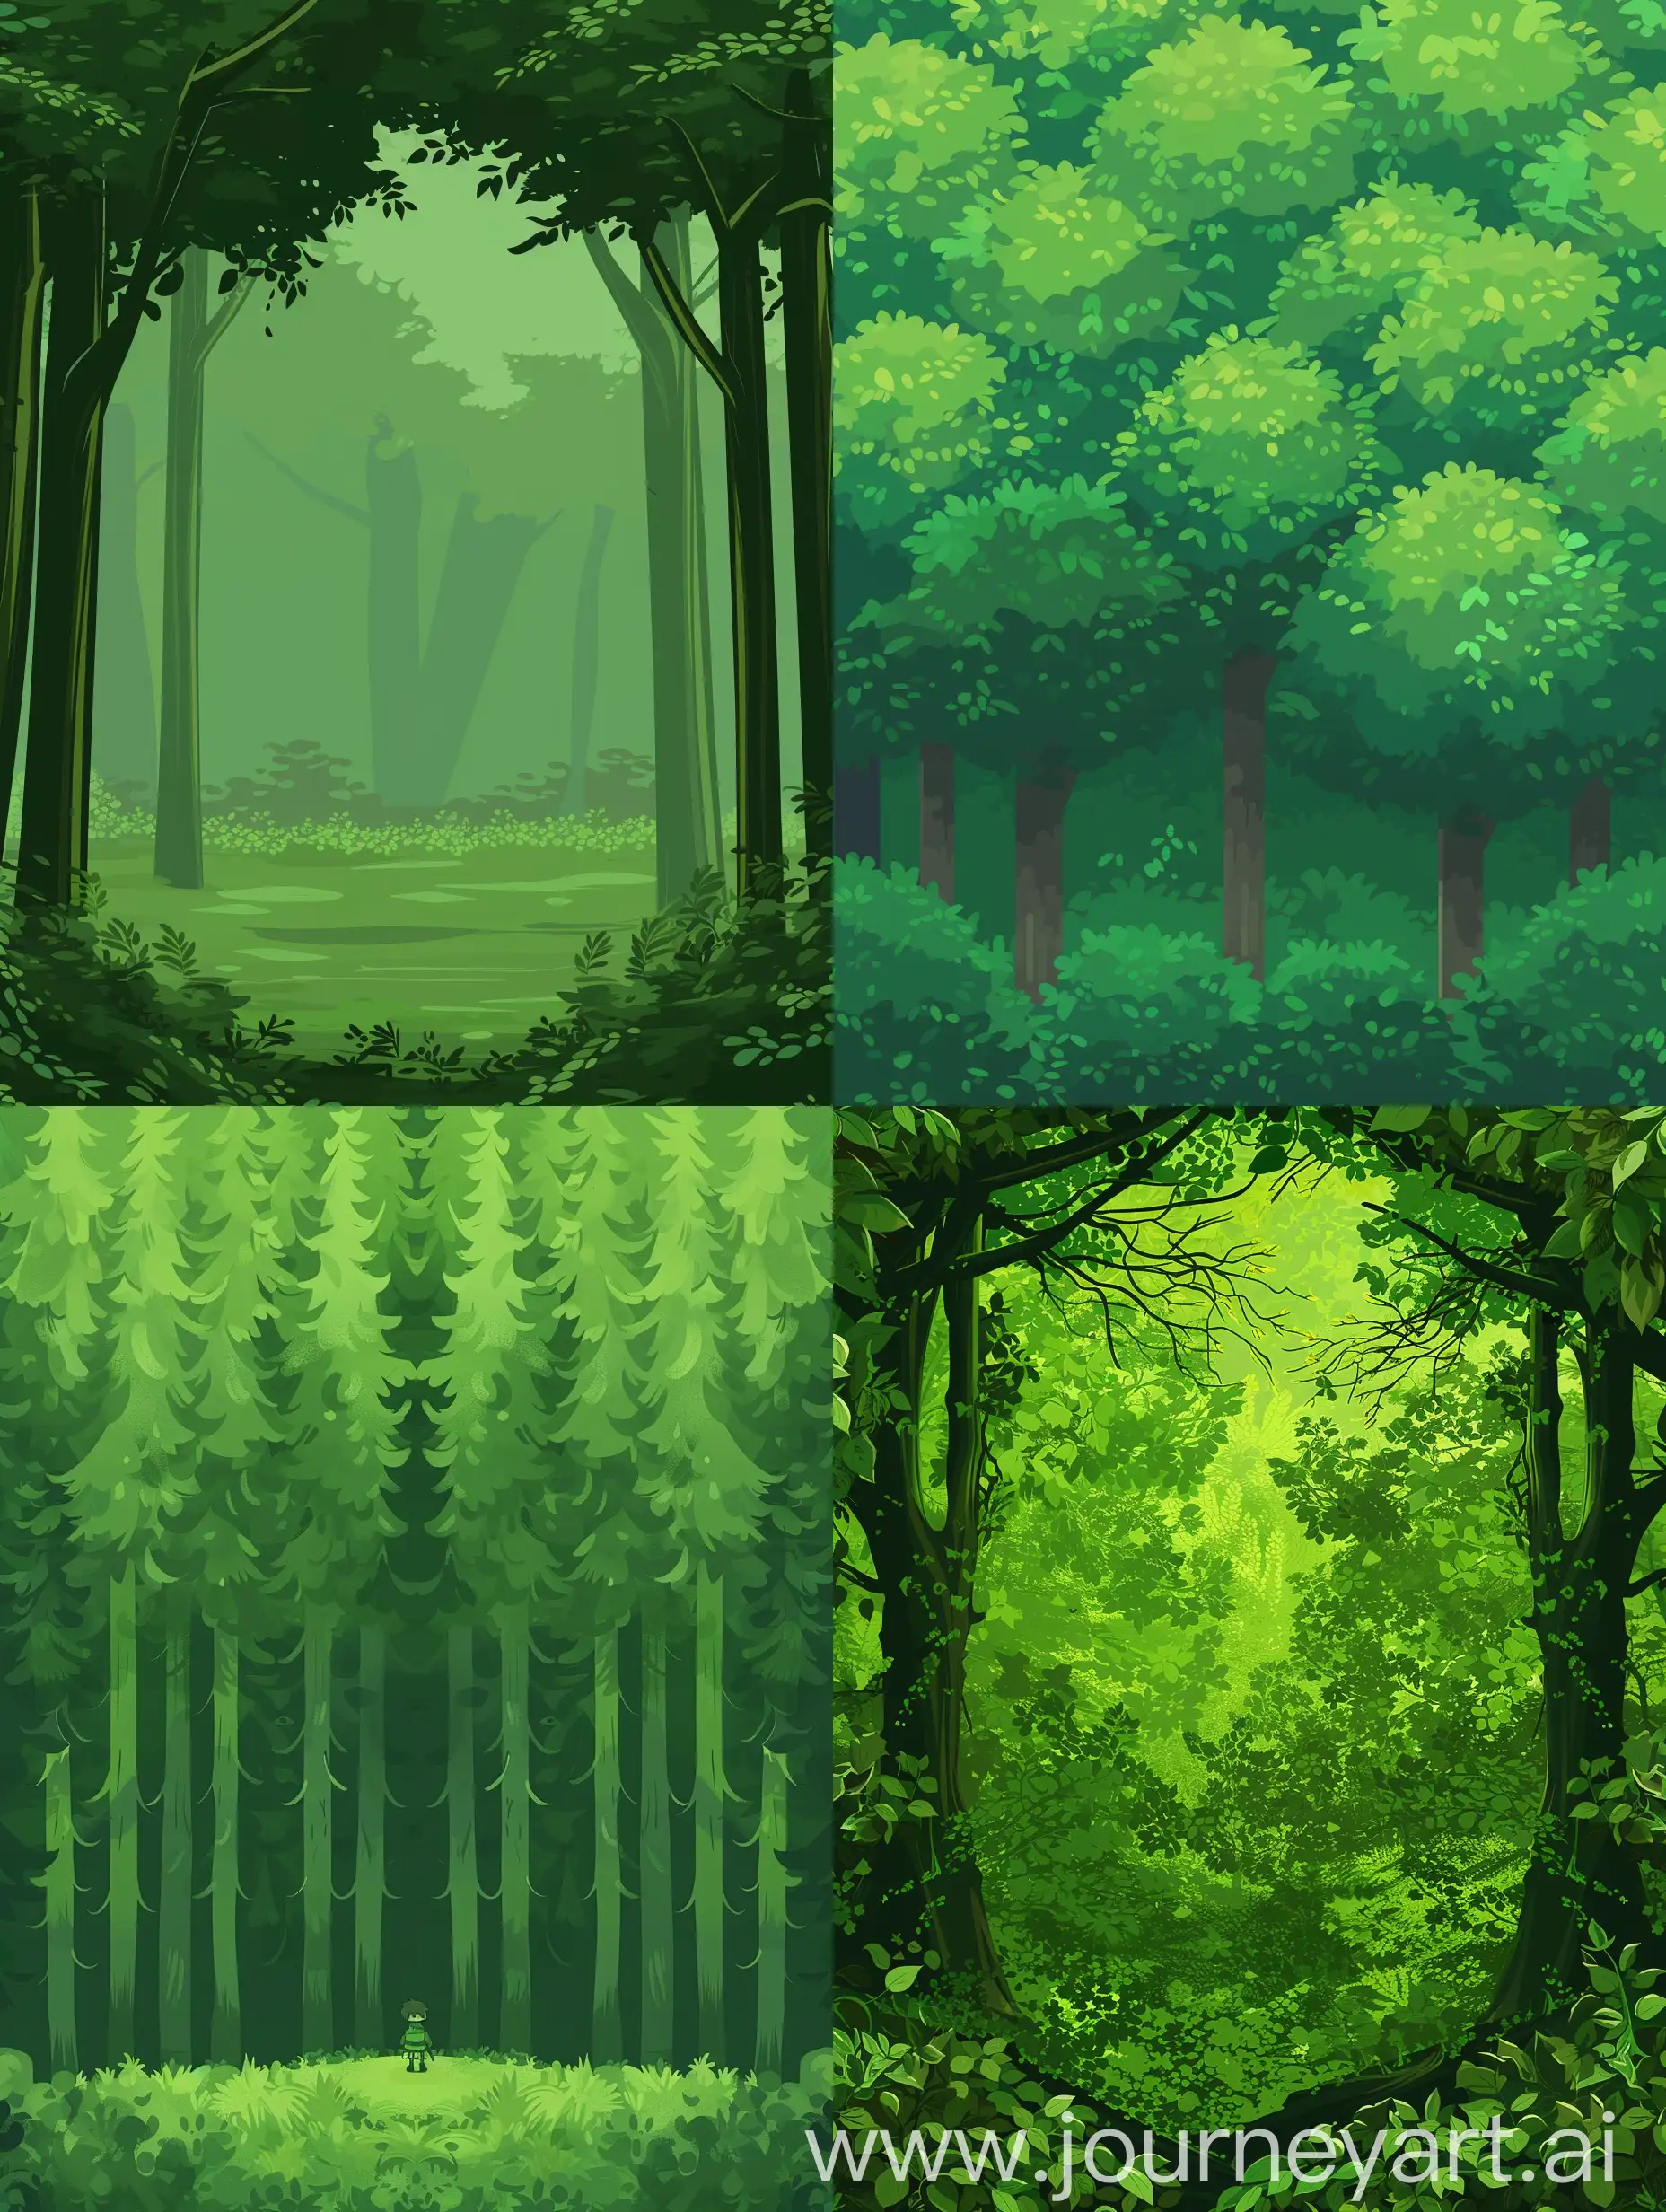 生成一个跟之前图片一样风格的绿色森林背景。中间不要人物
